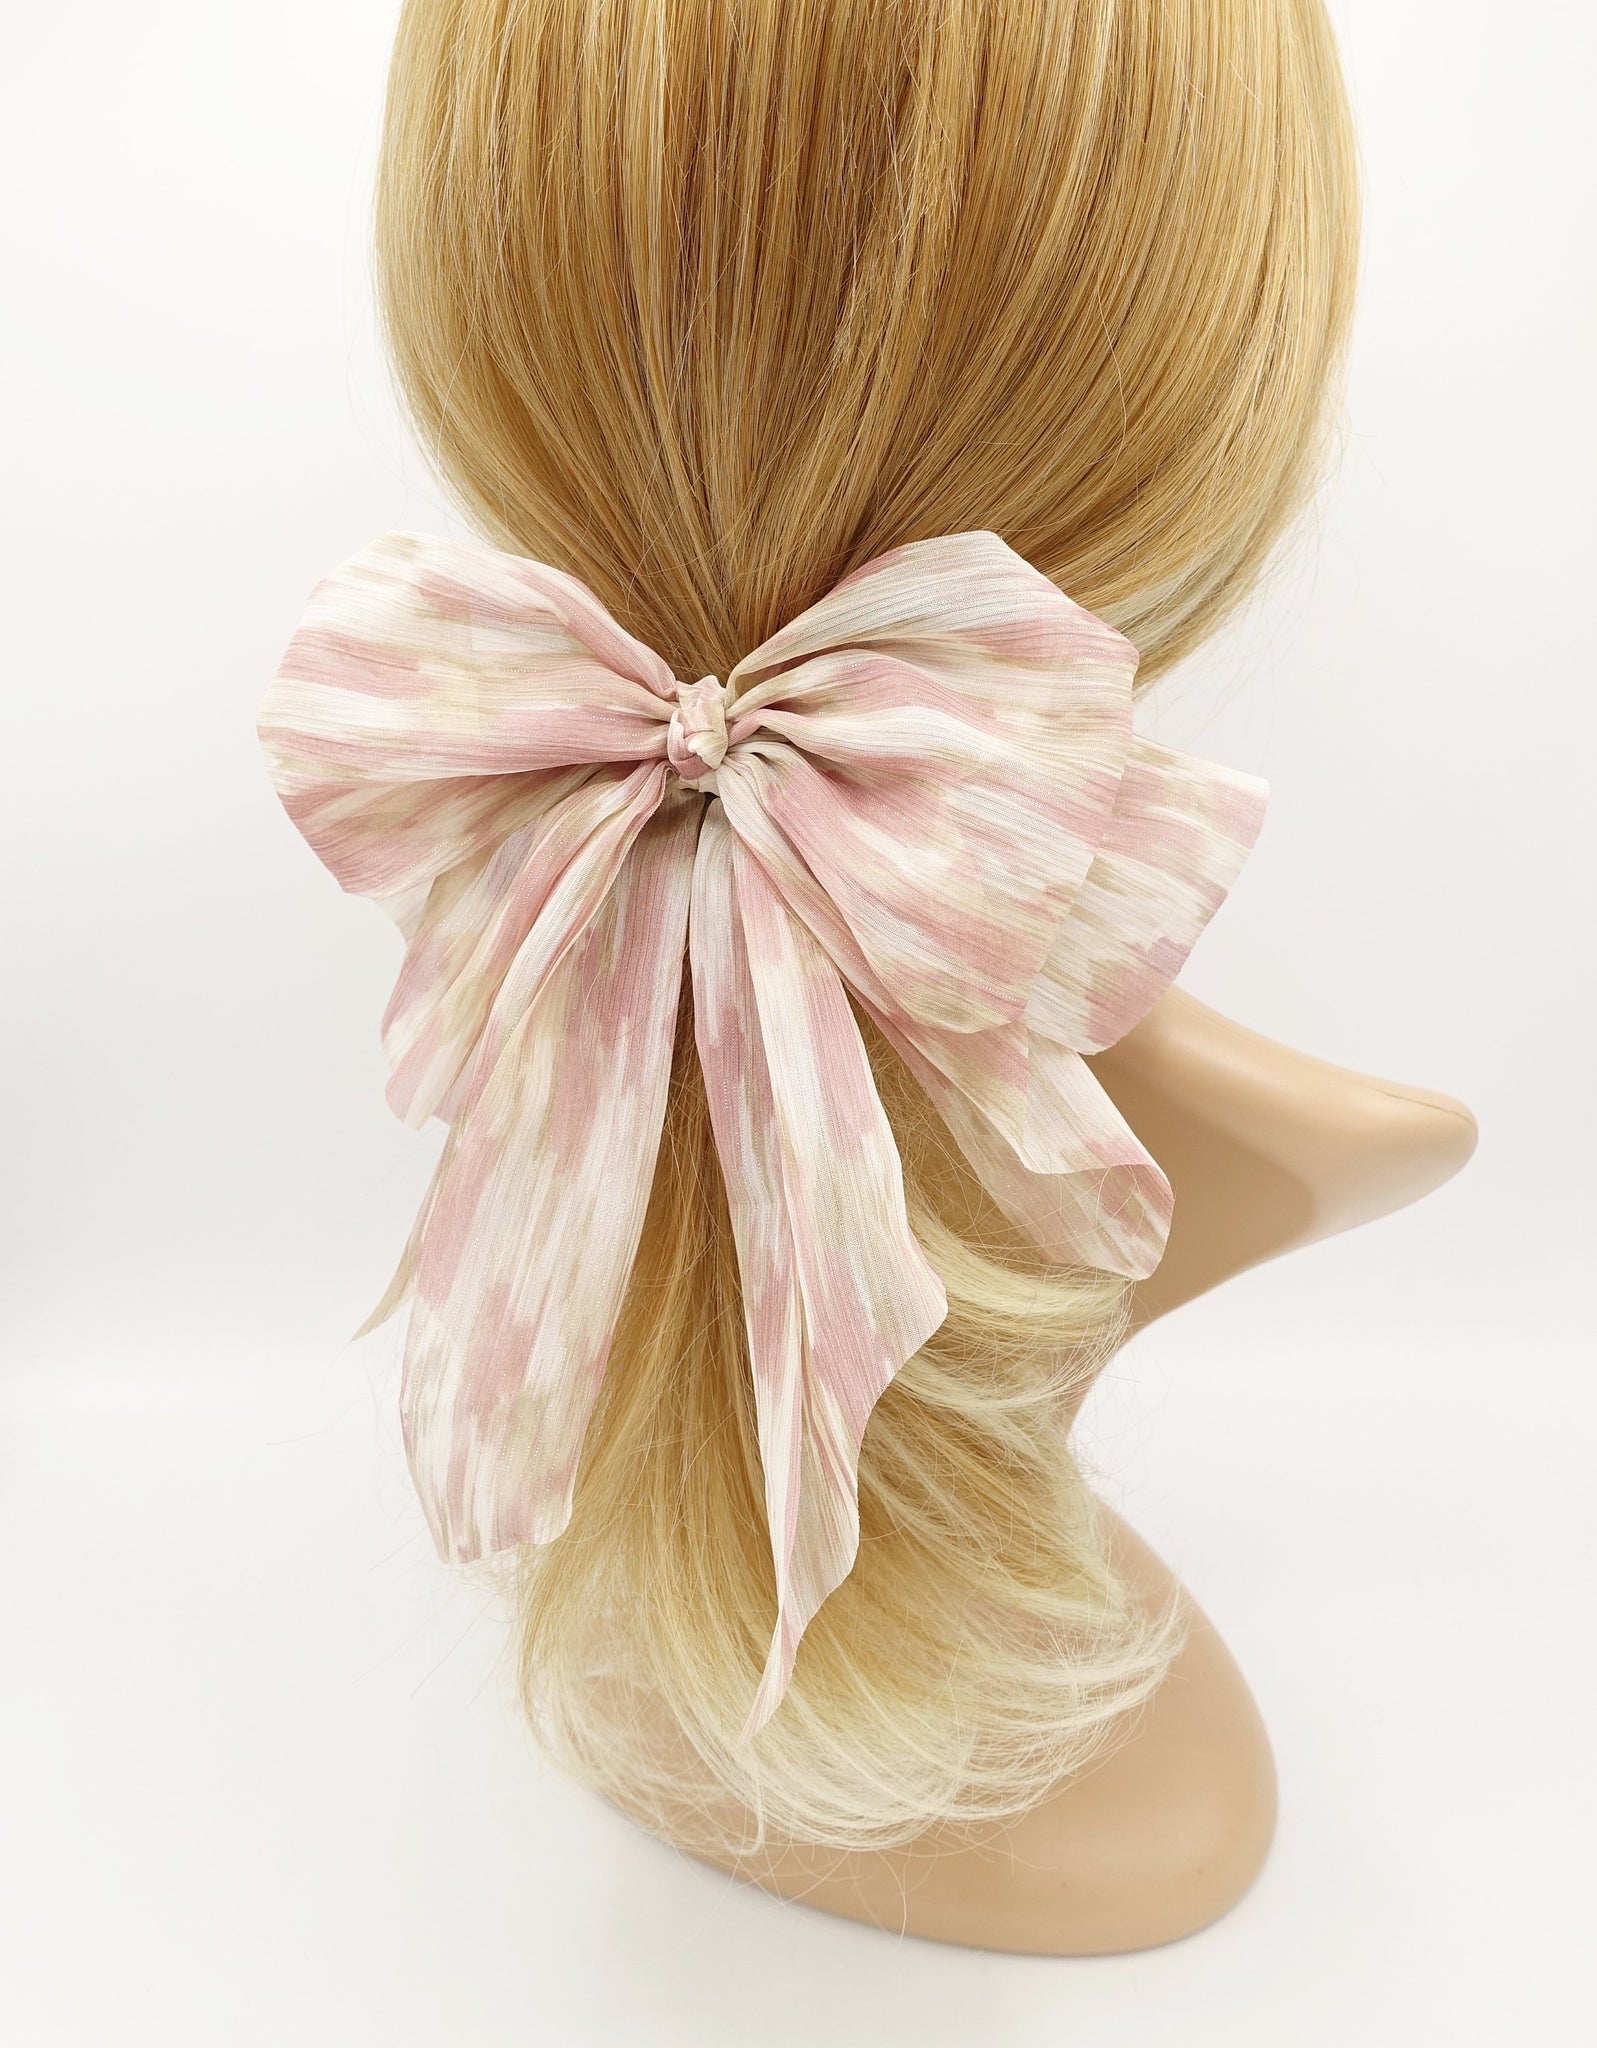 cute hair bow for women 